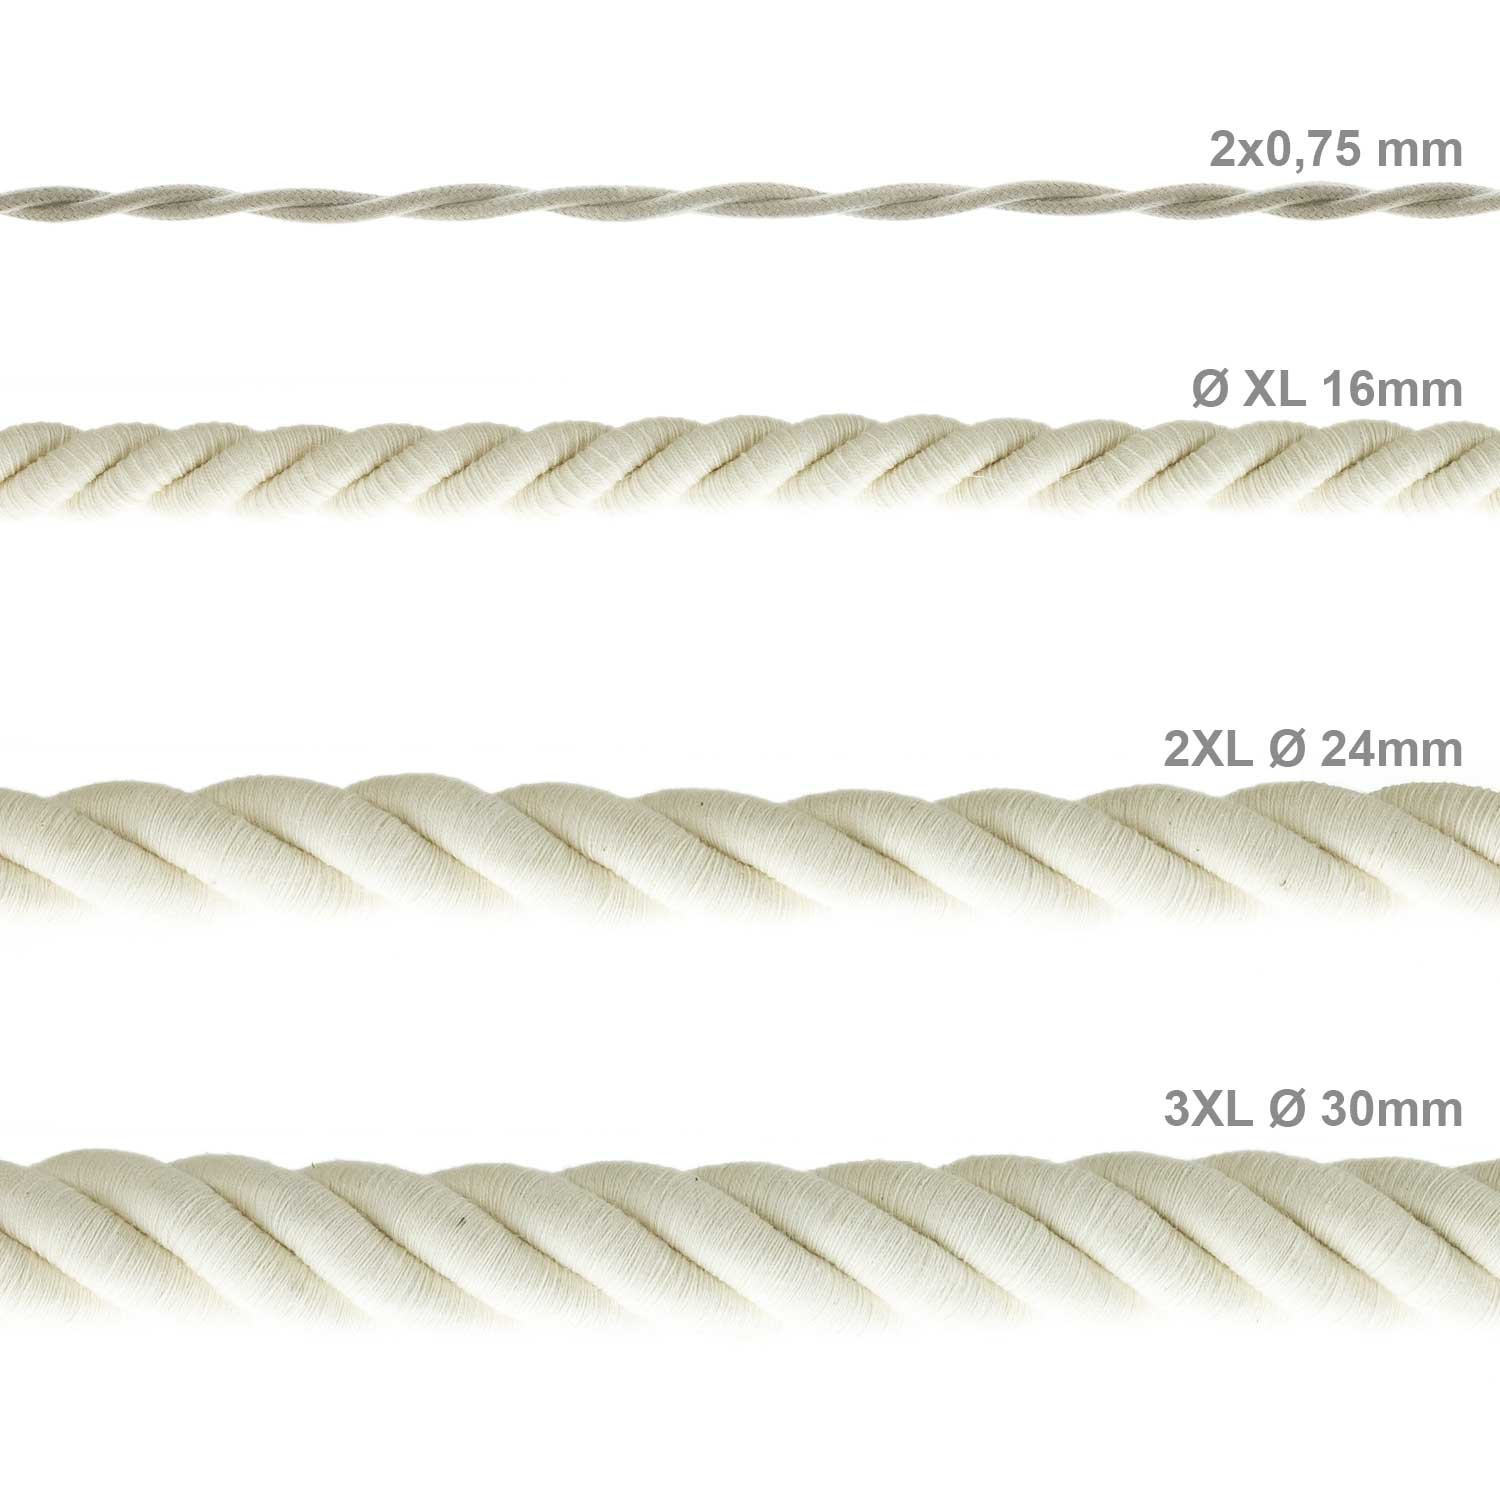 Electrische 3XL touwkabel, 3 x 0,75 mm. Binnenkabels bedekt met textiel en katoen. Diameter 30 mm.